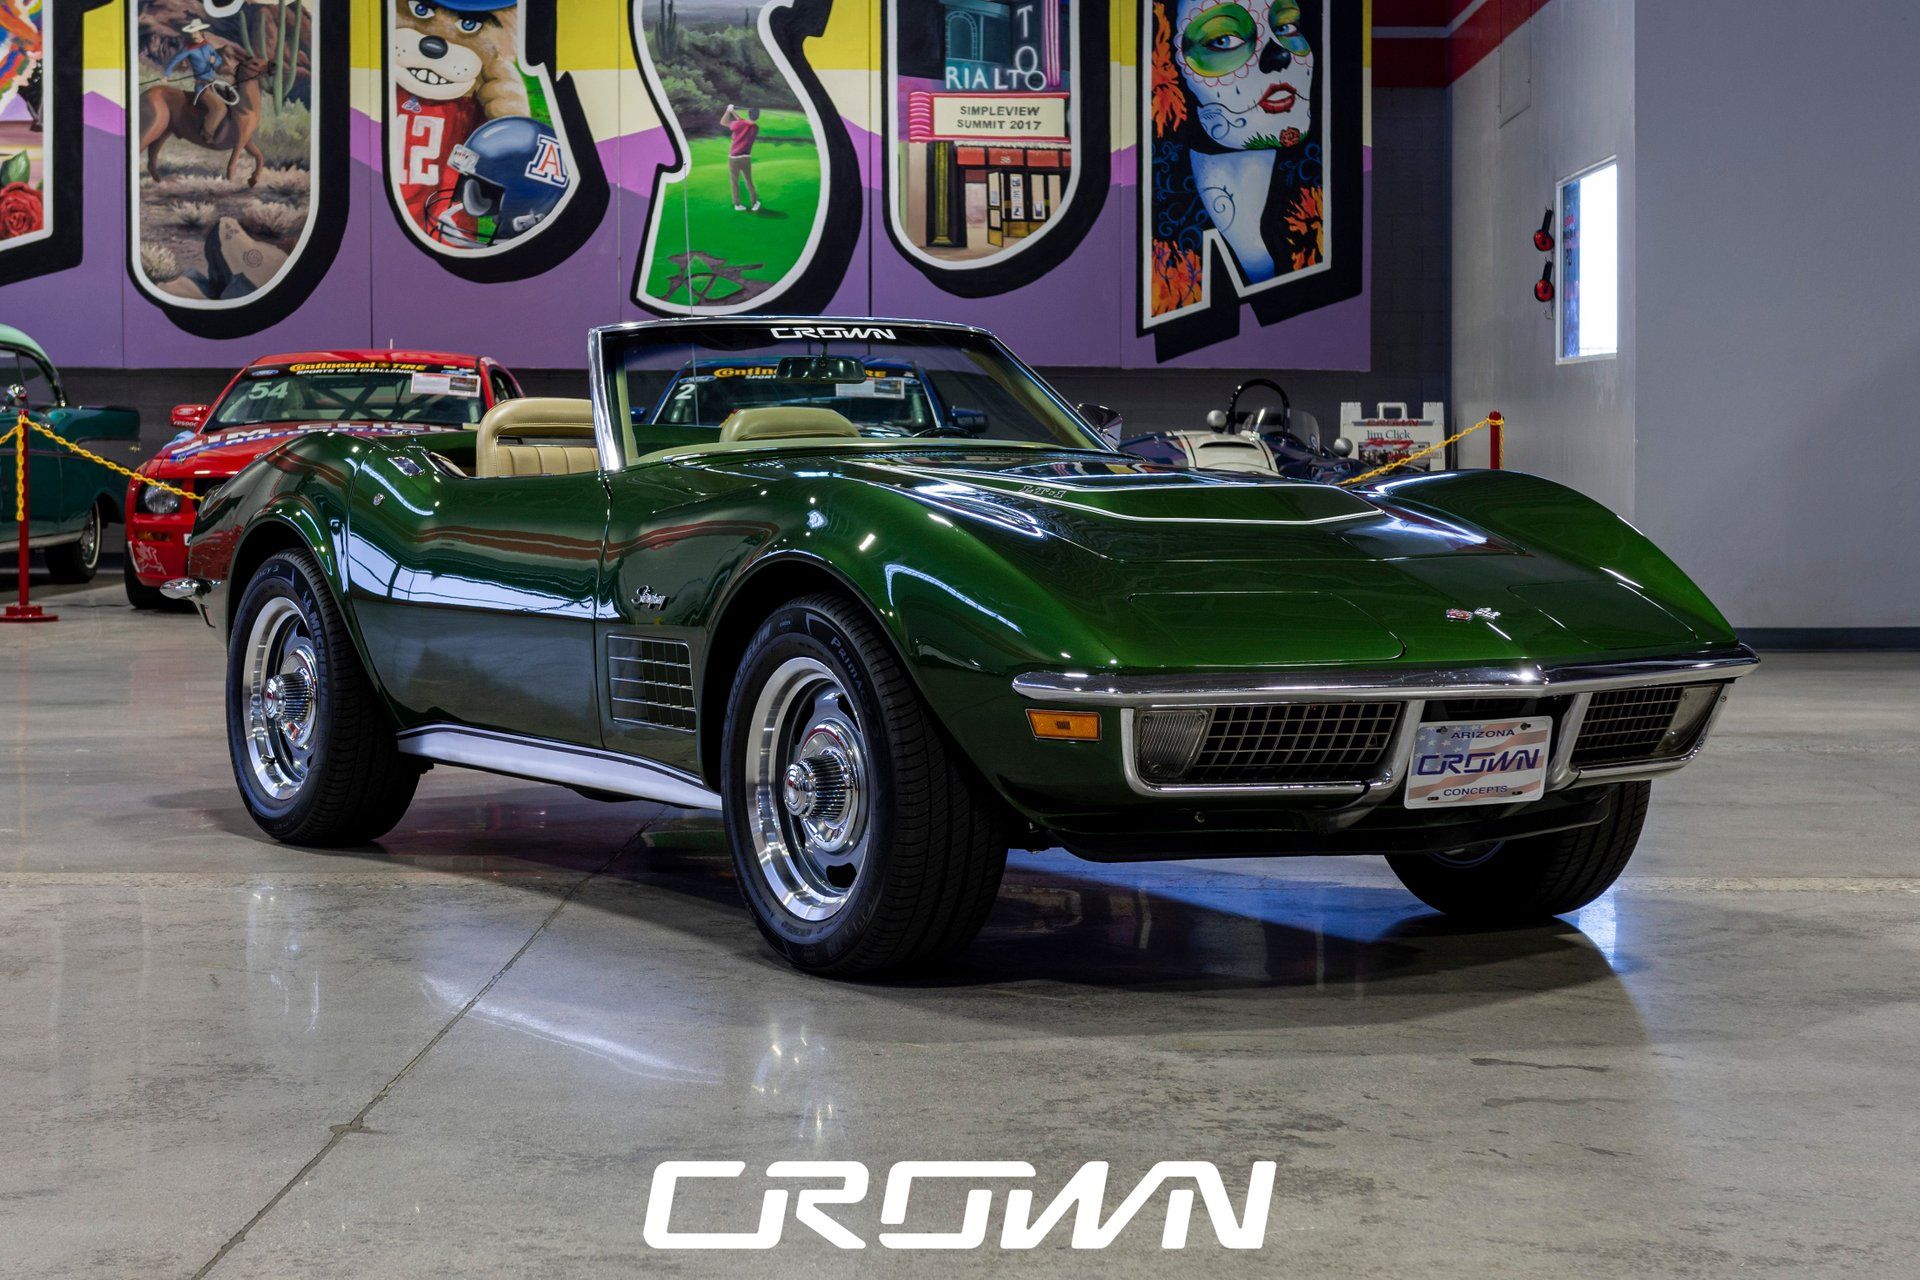 <img src="1970-vette.jpeg" alt="1970 Chevrolet Corvette Convertible LT1">